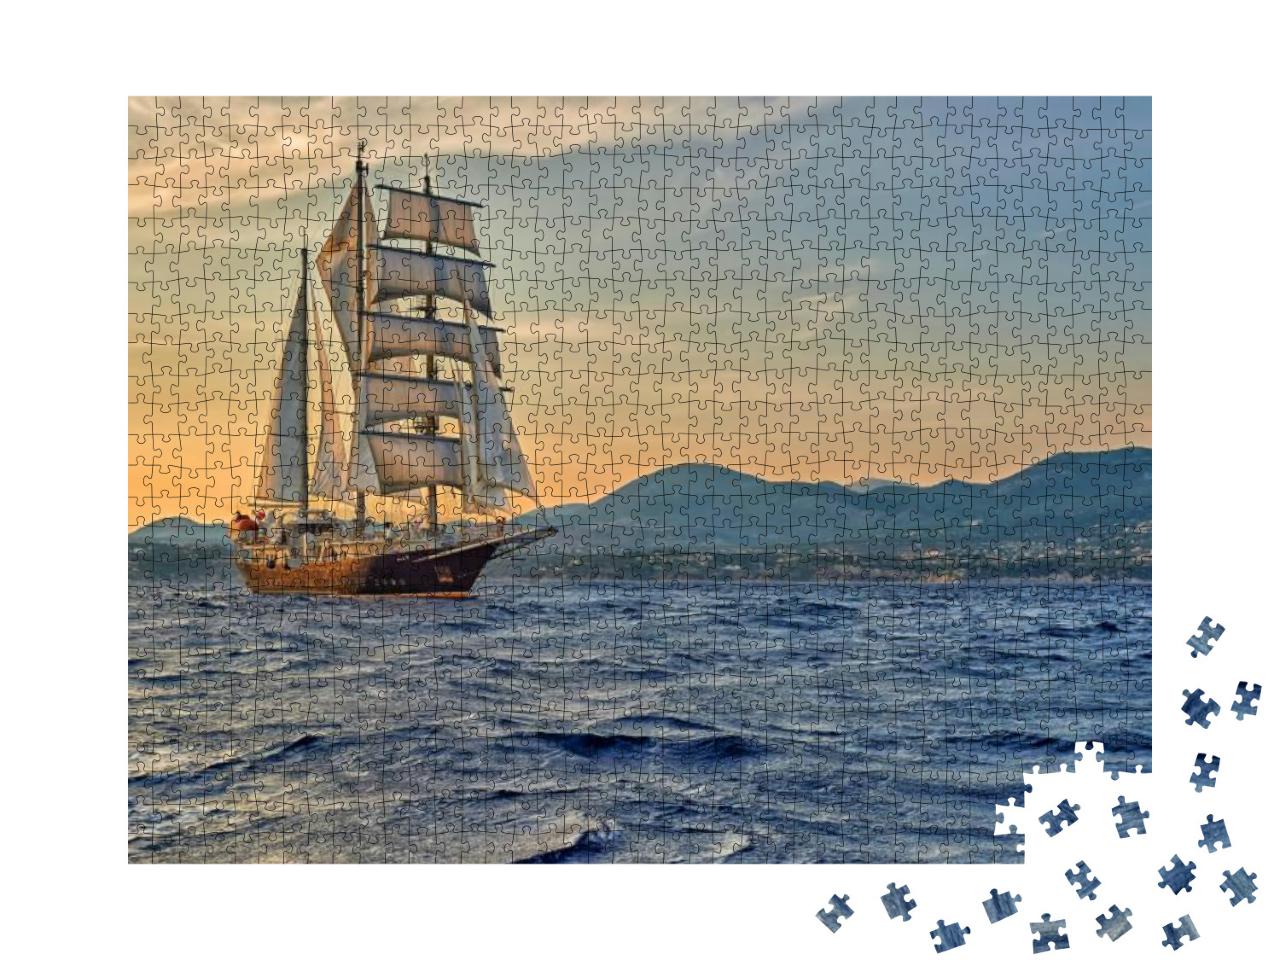 Puzzle 1000 Teile „Ein Segelschiff auf seiner Reise“